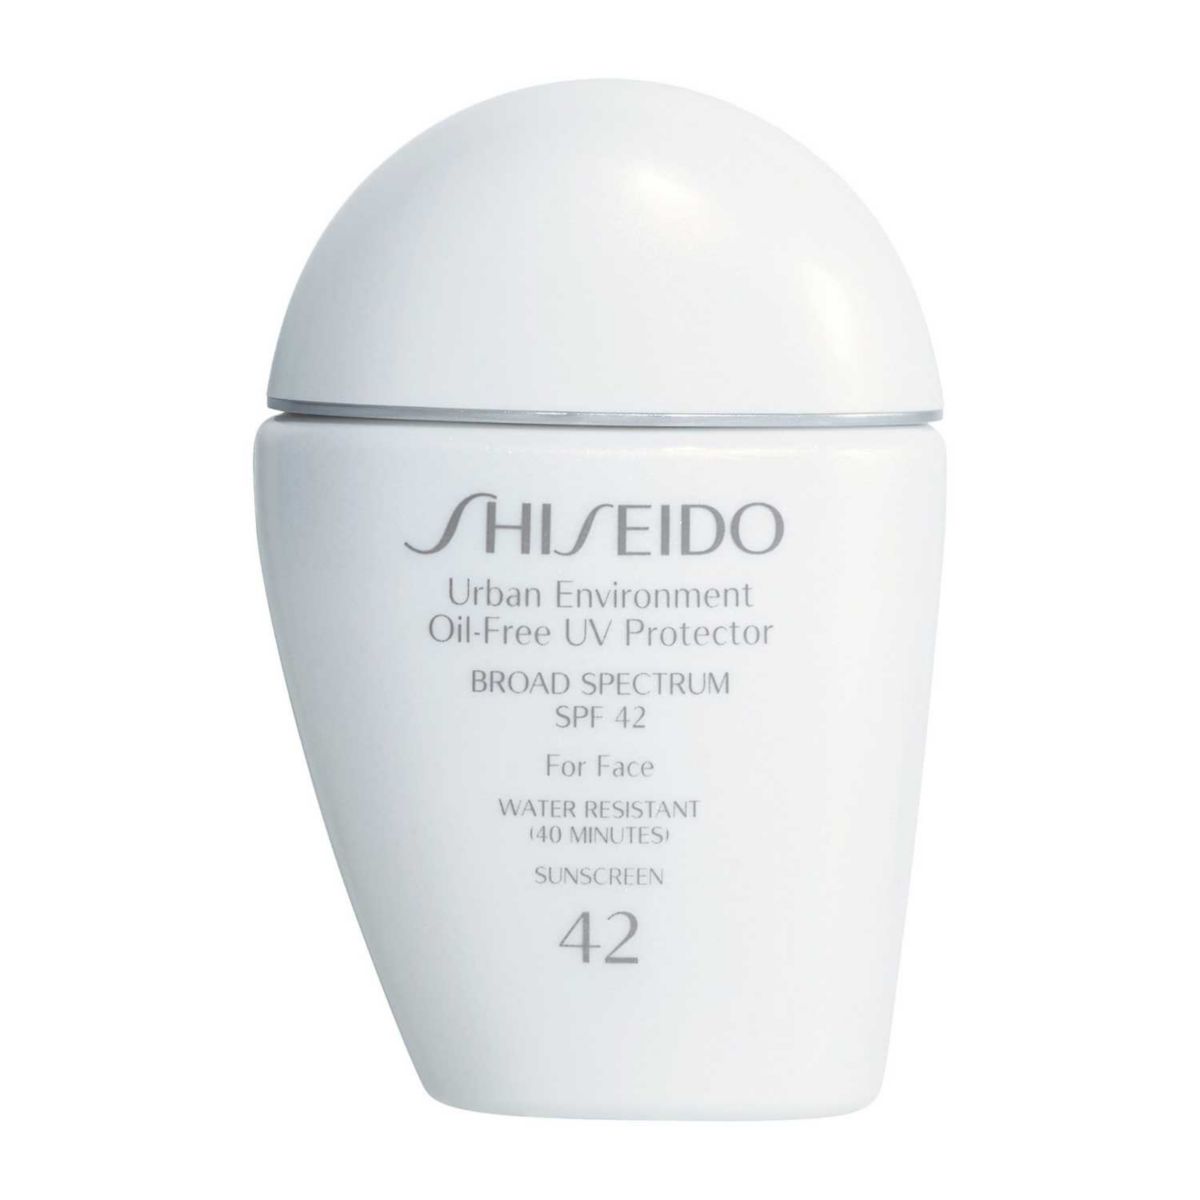 Shiseido Urban Environment безмасляный солнцезащитный крем для лица с УФ-защитой широкого спектра действия SPF 42 Shiseido